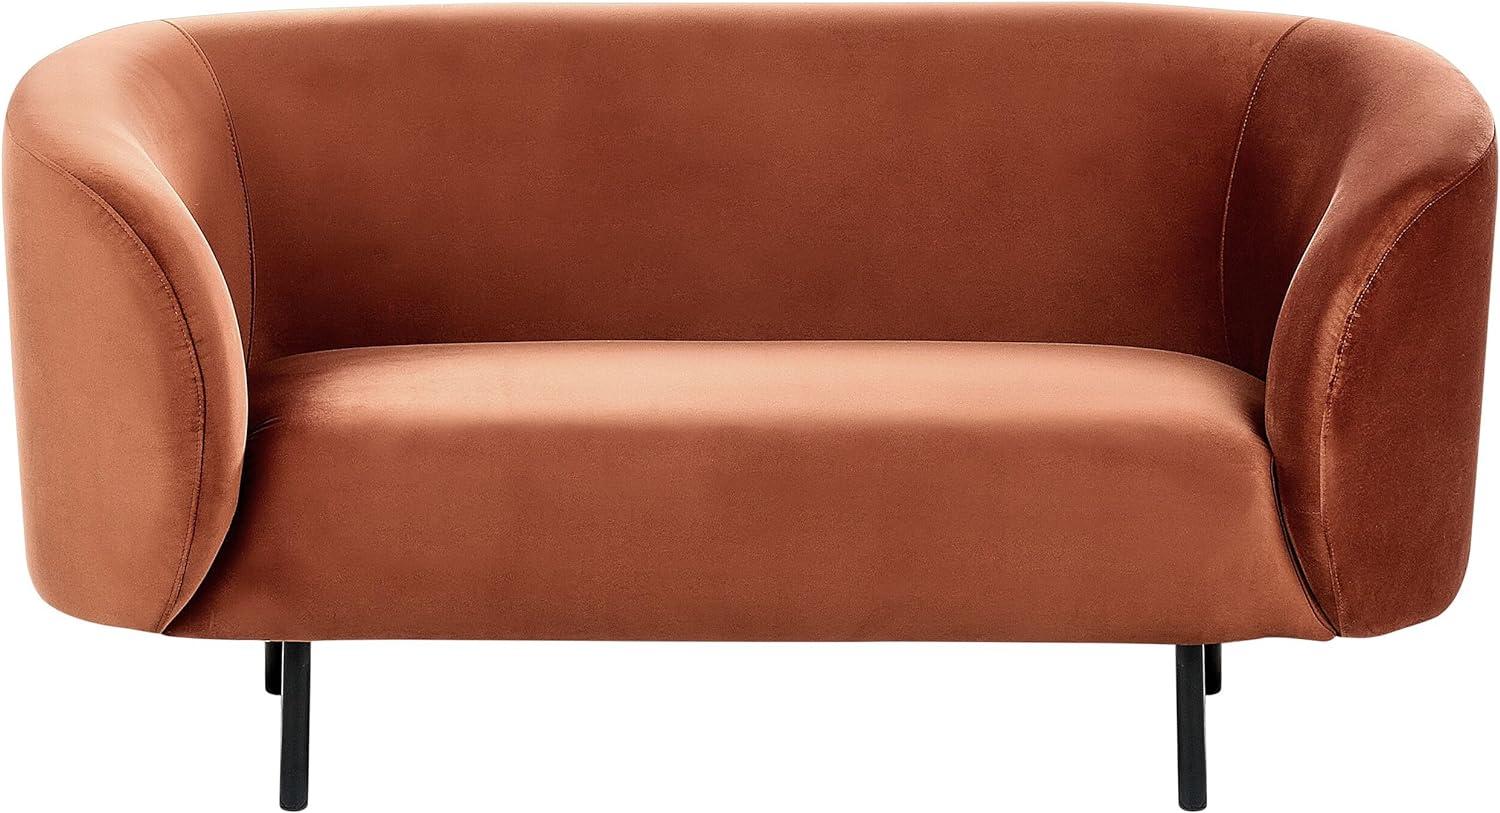 2-Sitzer Sofa Samtstoff orange schwarz LOEN Bild 1